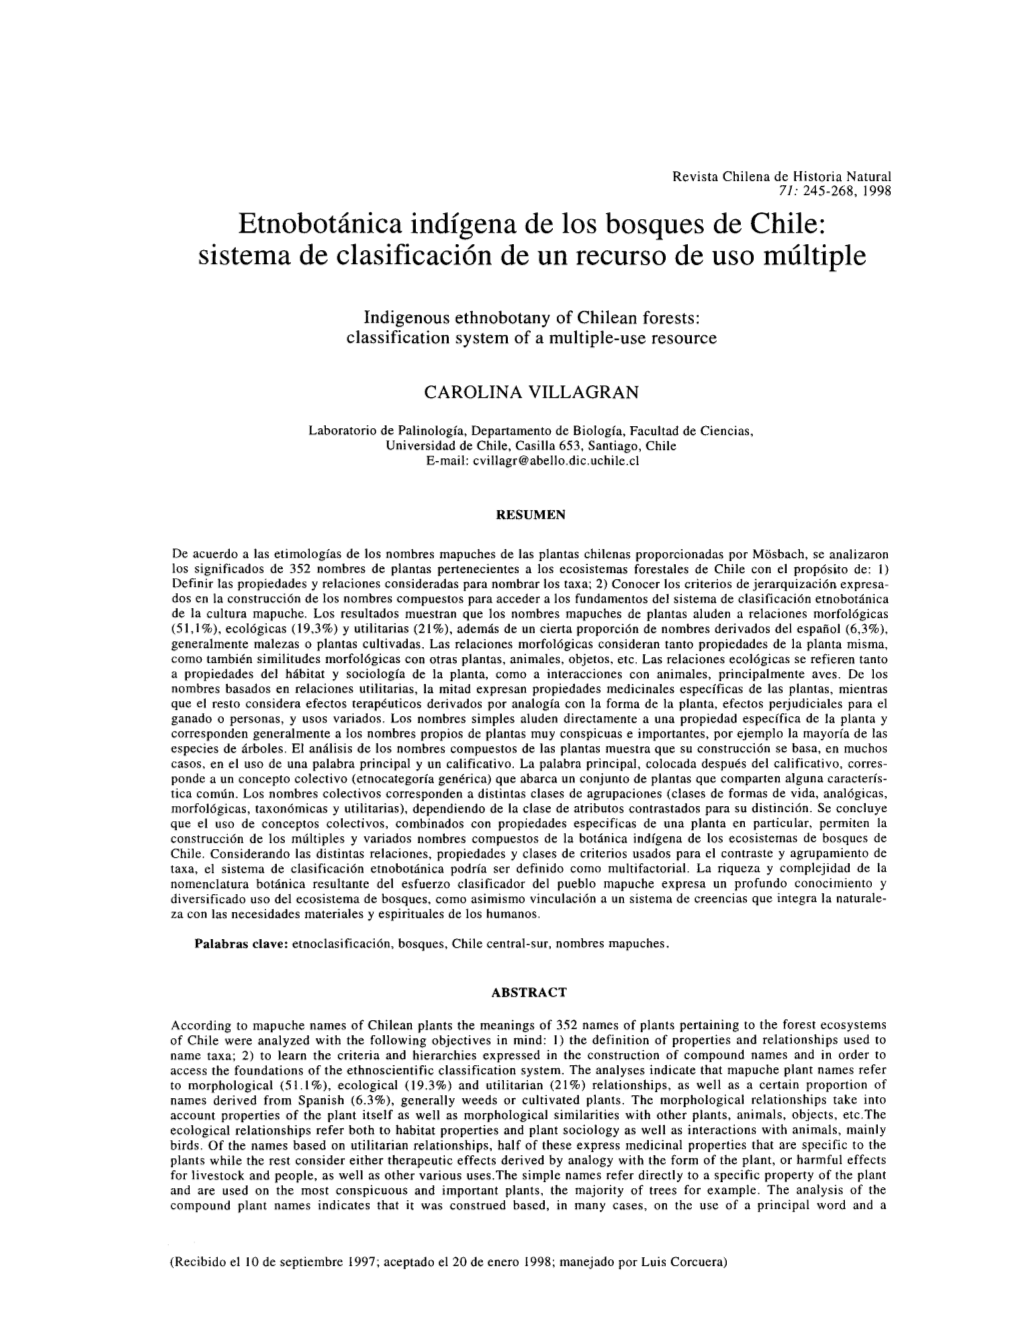 Etnobotánica Indígena De Los Bosques De Chile: Sistema De Clasificación De Un Recurso De Uso Múltiple